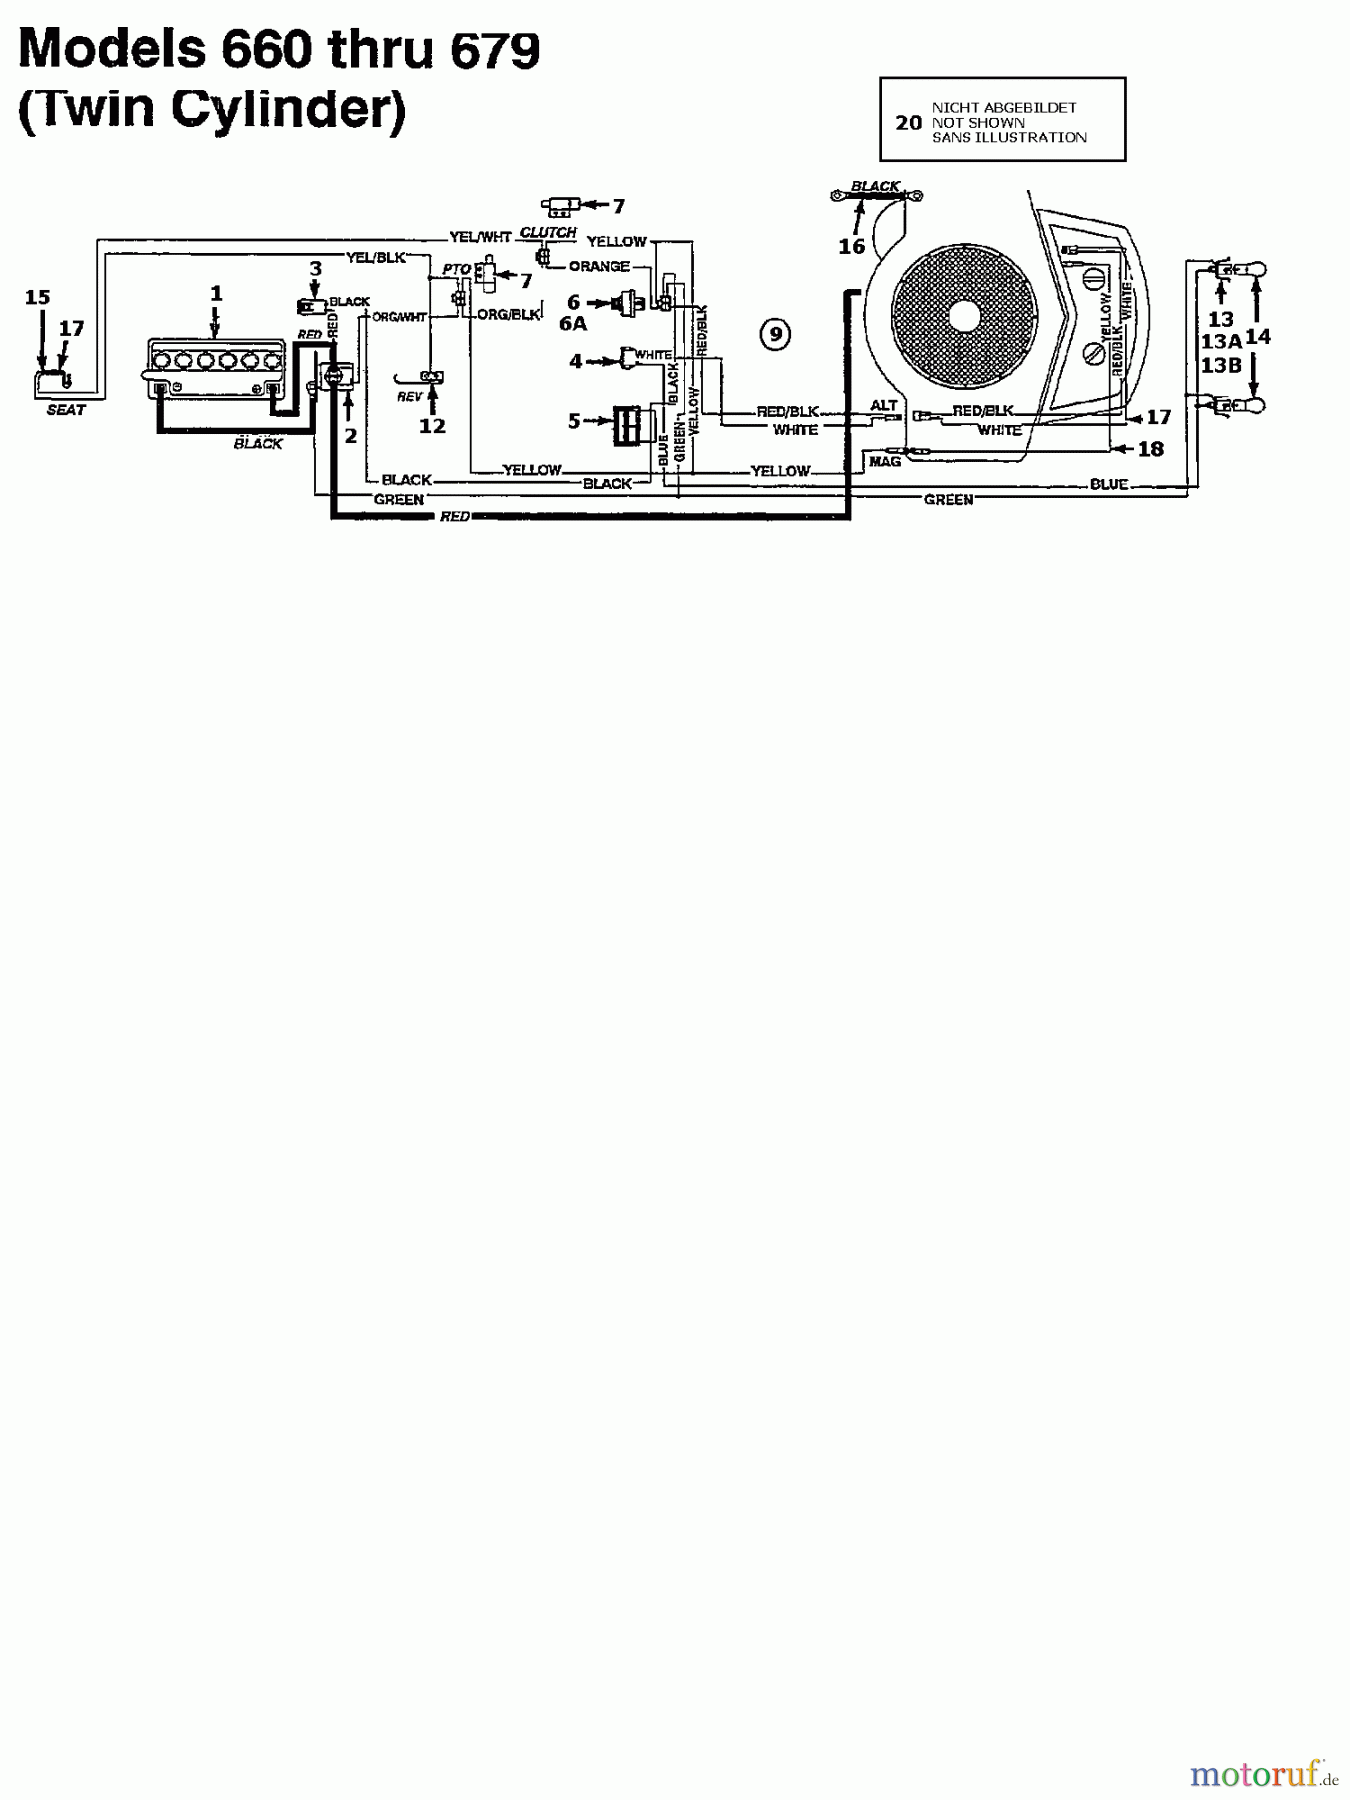  Brill Tracteurs de pelouse 76 RTH 134K677C629  (1994) Plan électrique 2 cylindre